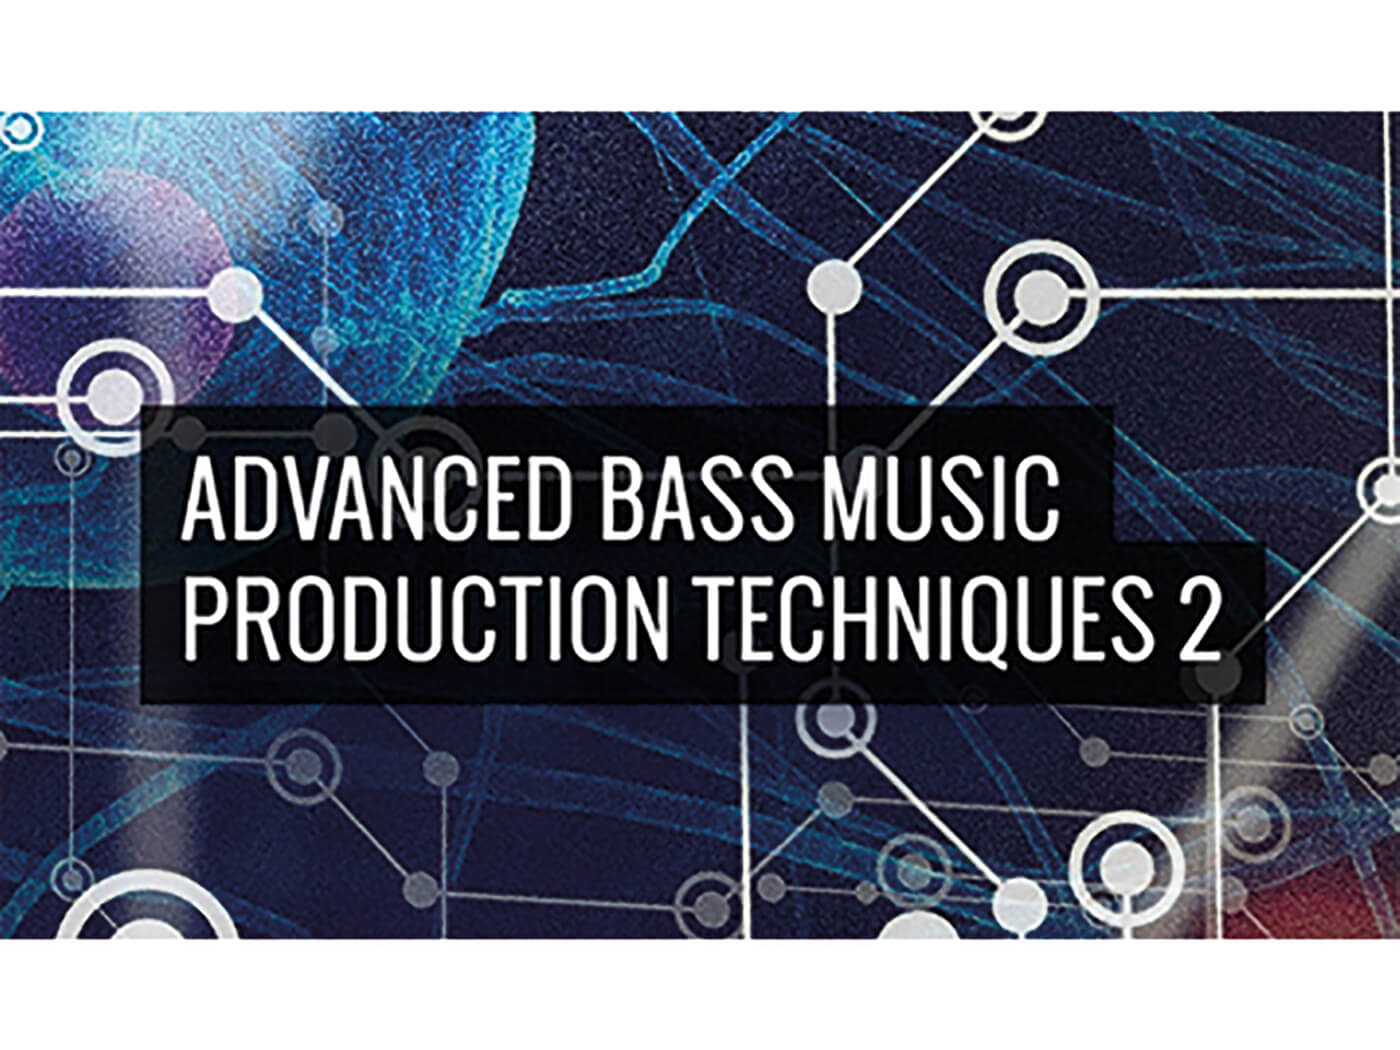 Producertech Course Advanced Bass Music Production Techniques 2